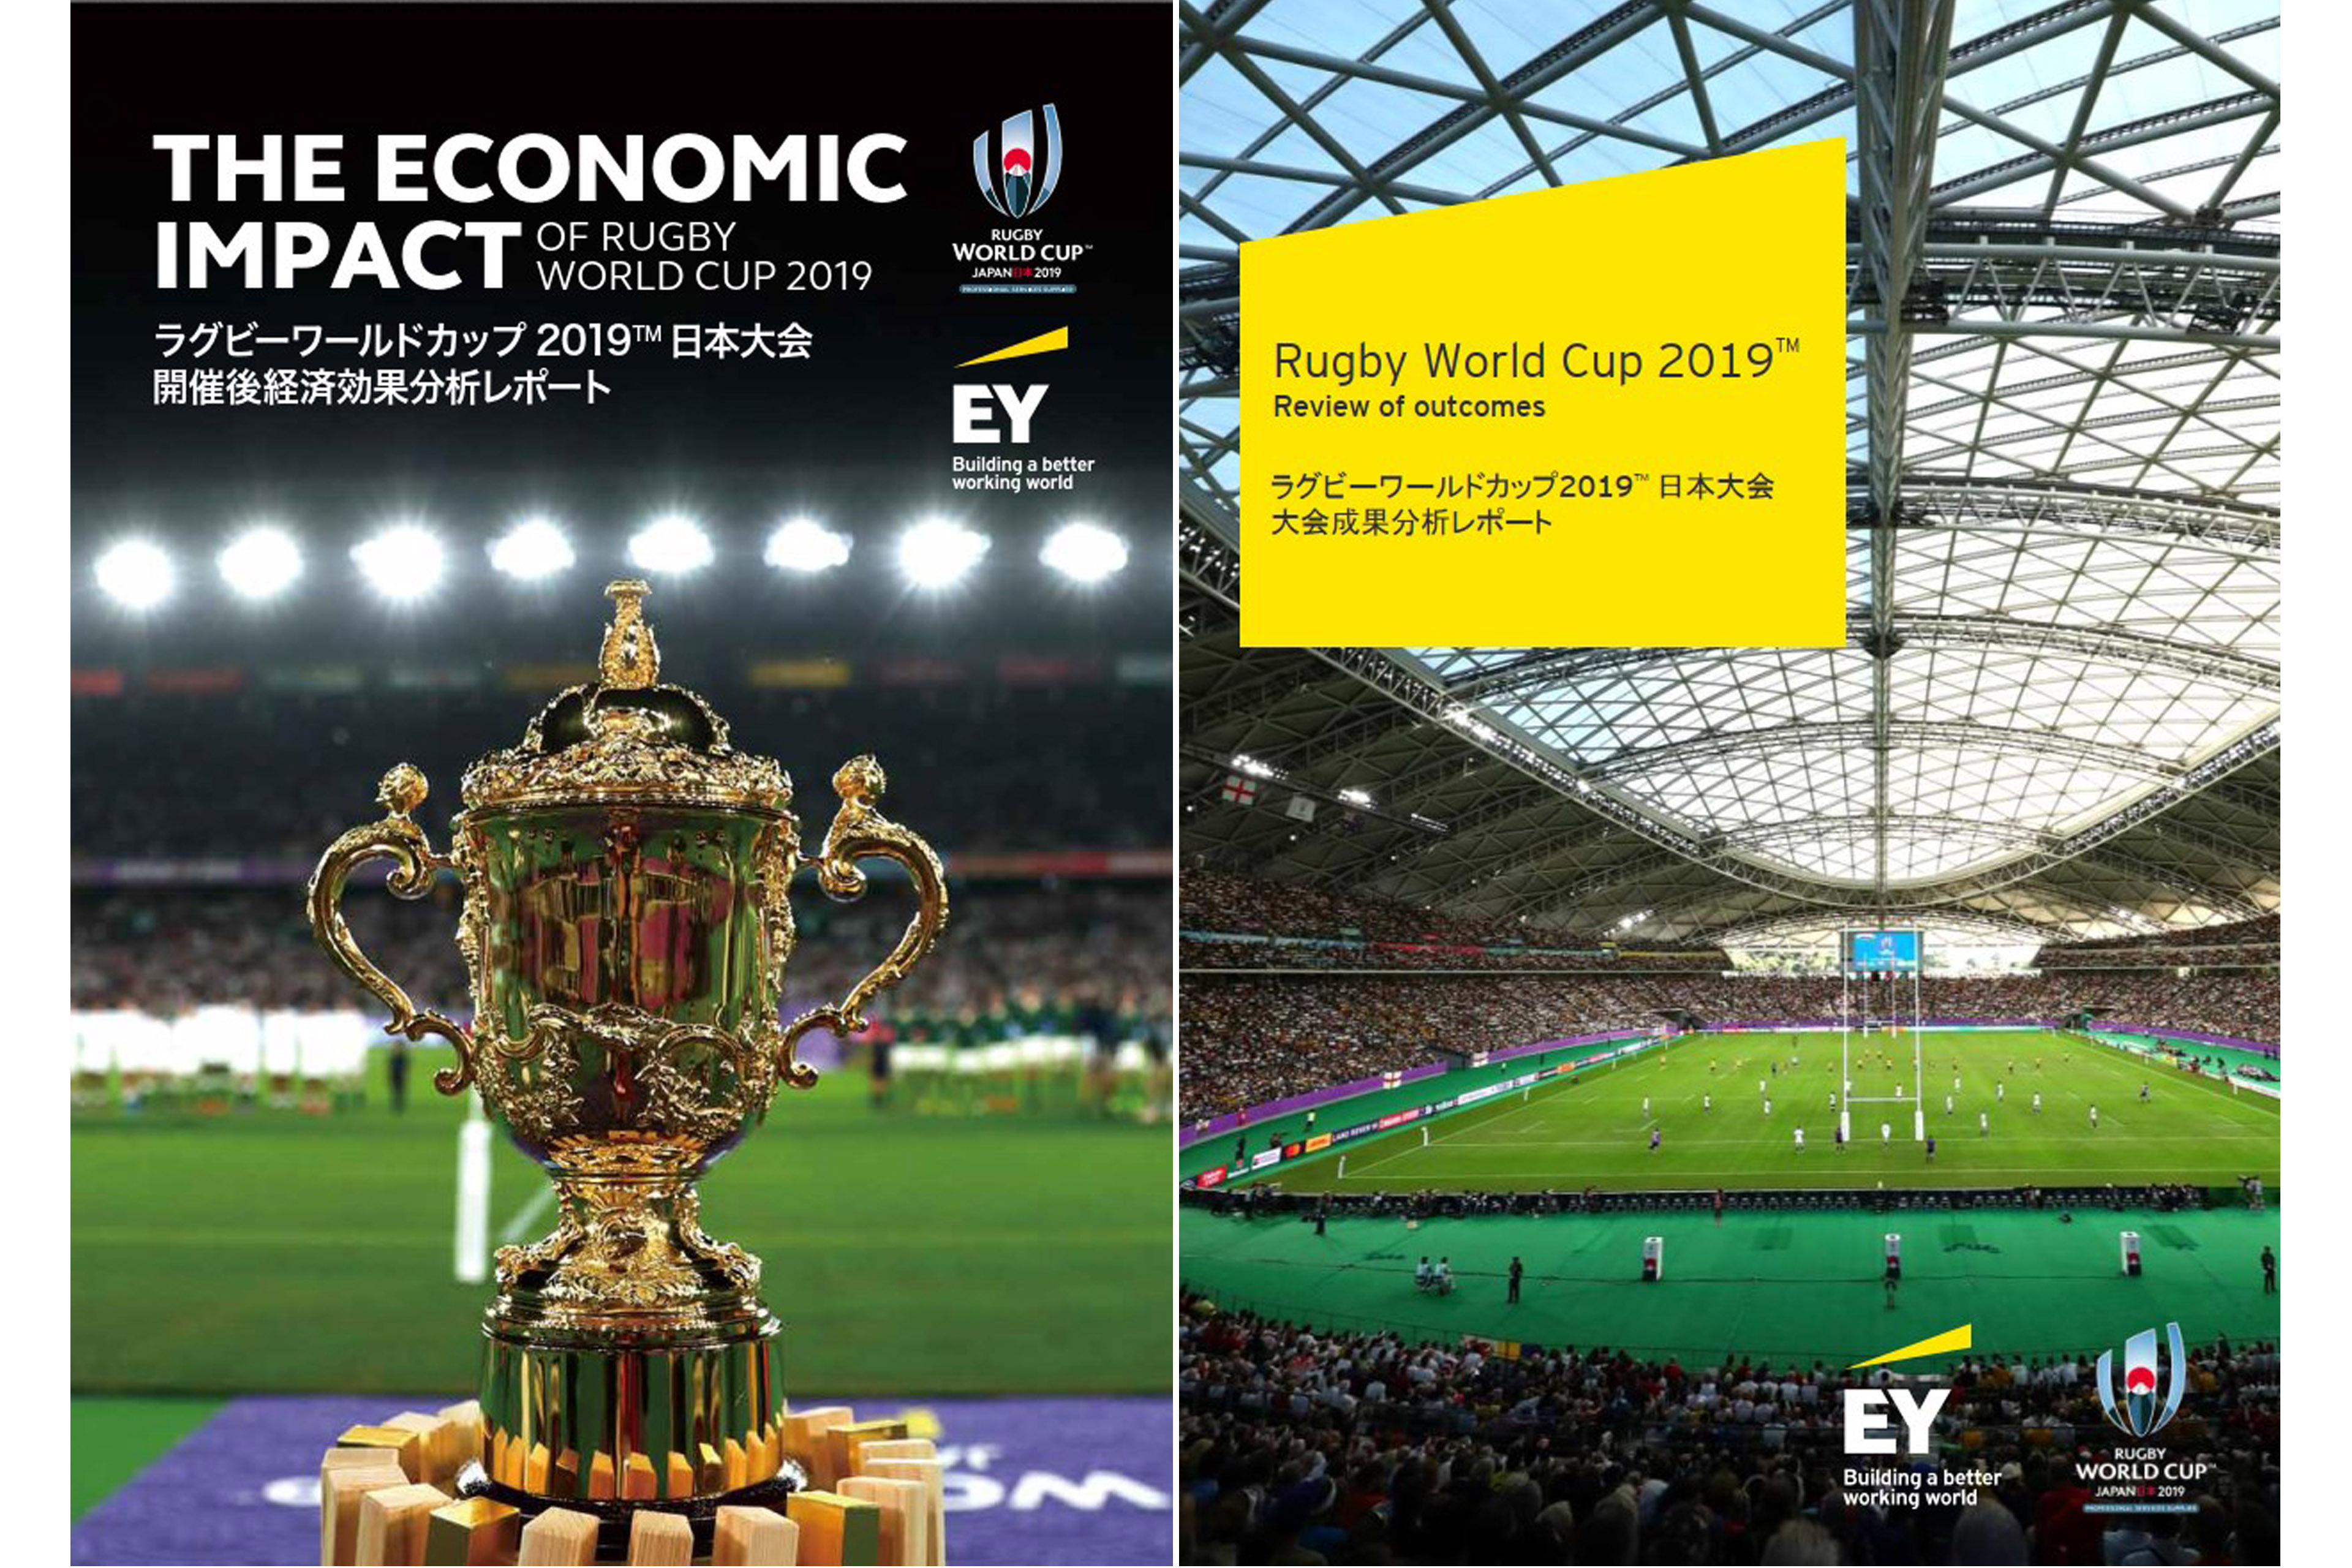 ラグビーワールドカップ2019™日本大会 開催後経済効果・大会成果分析レポート公開 - EY Japan